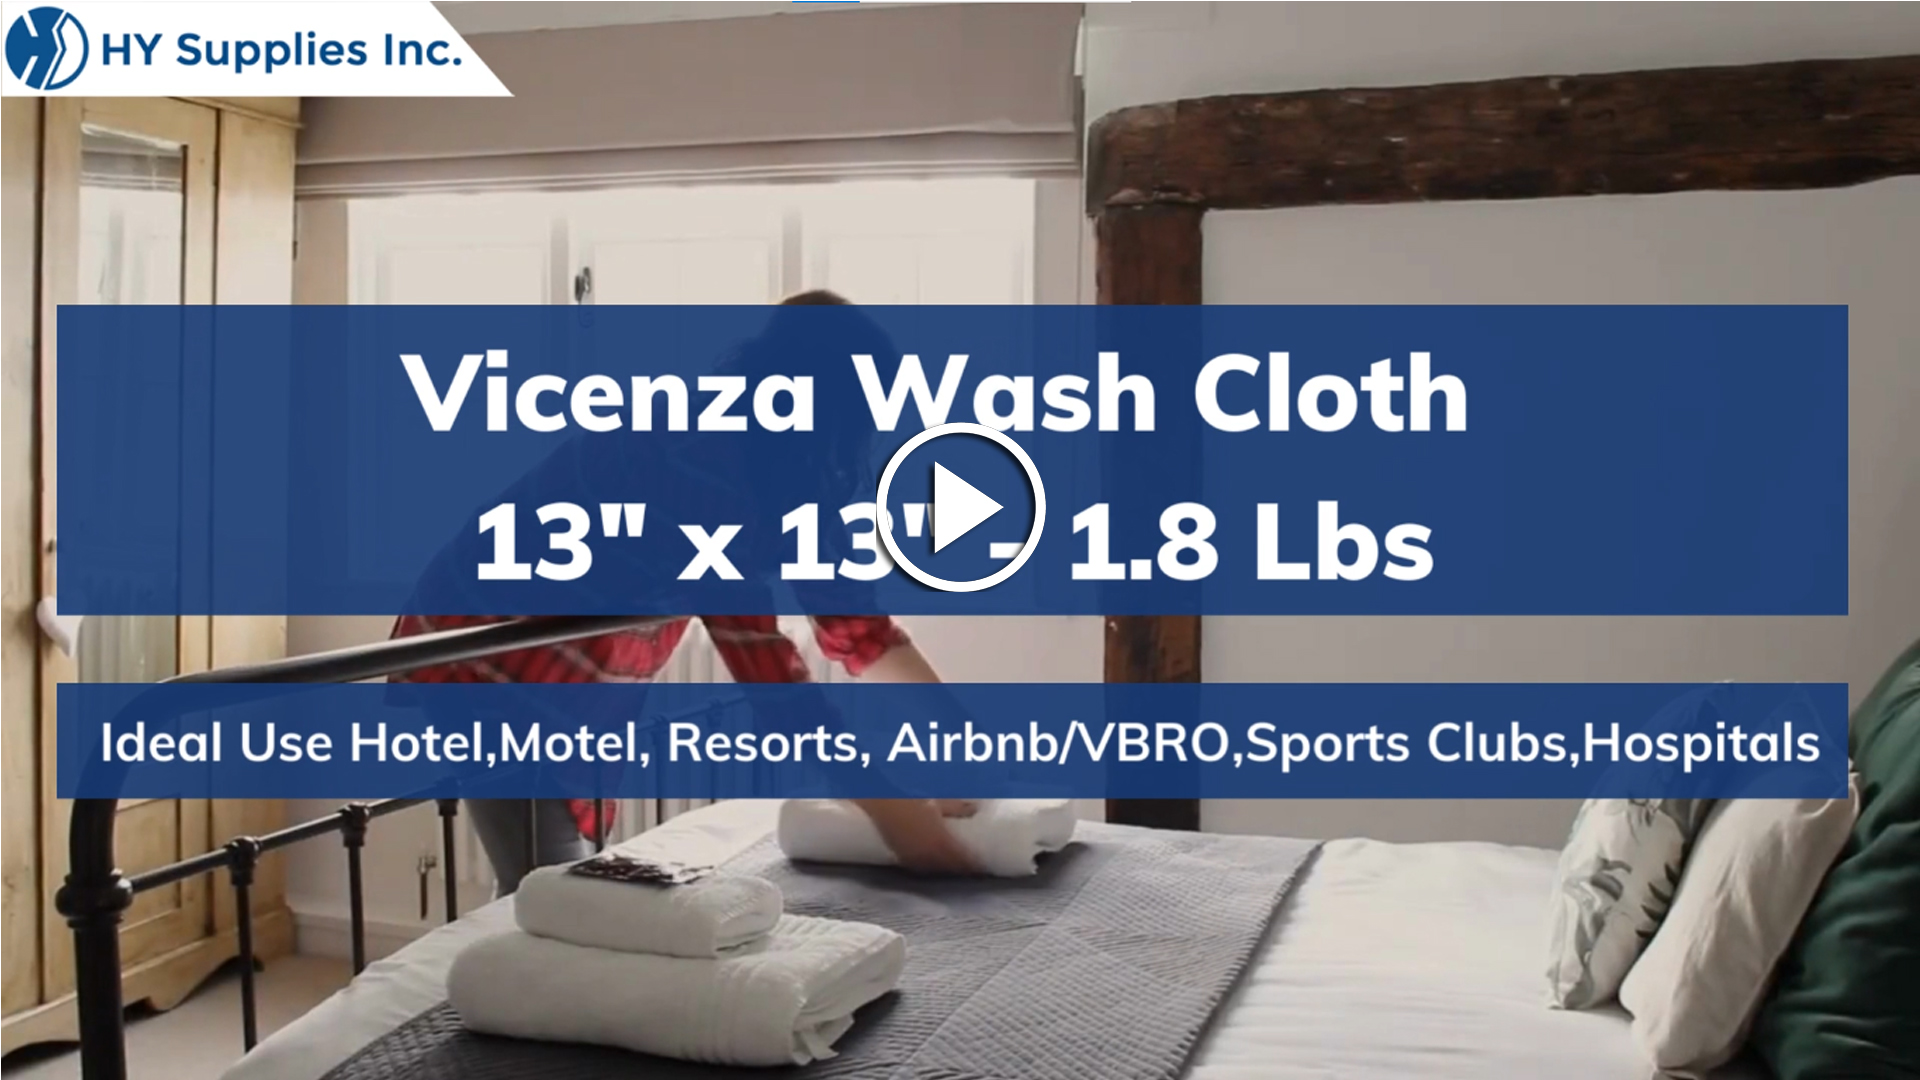 Vicenza Wash Cloth - 13"x 13"- 1.8 Lbs.